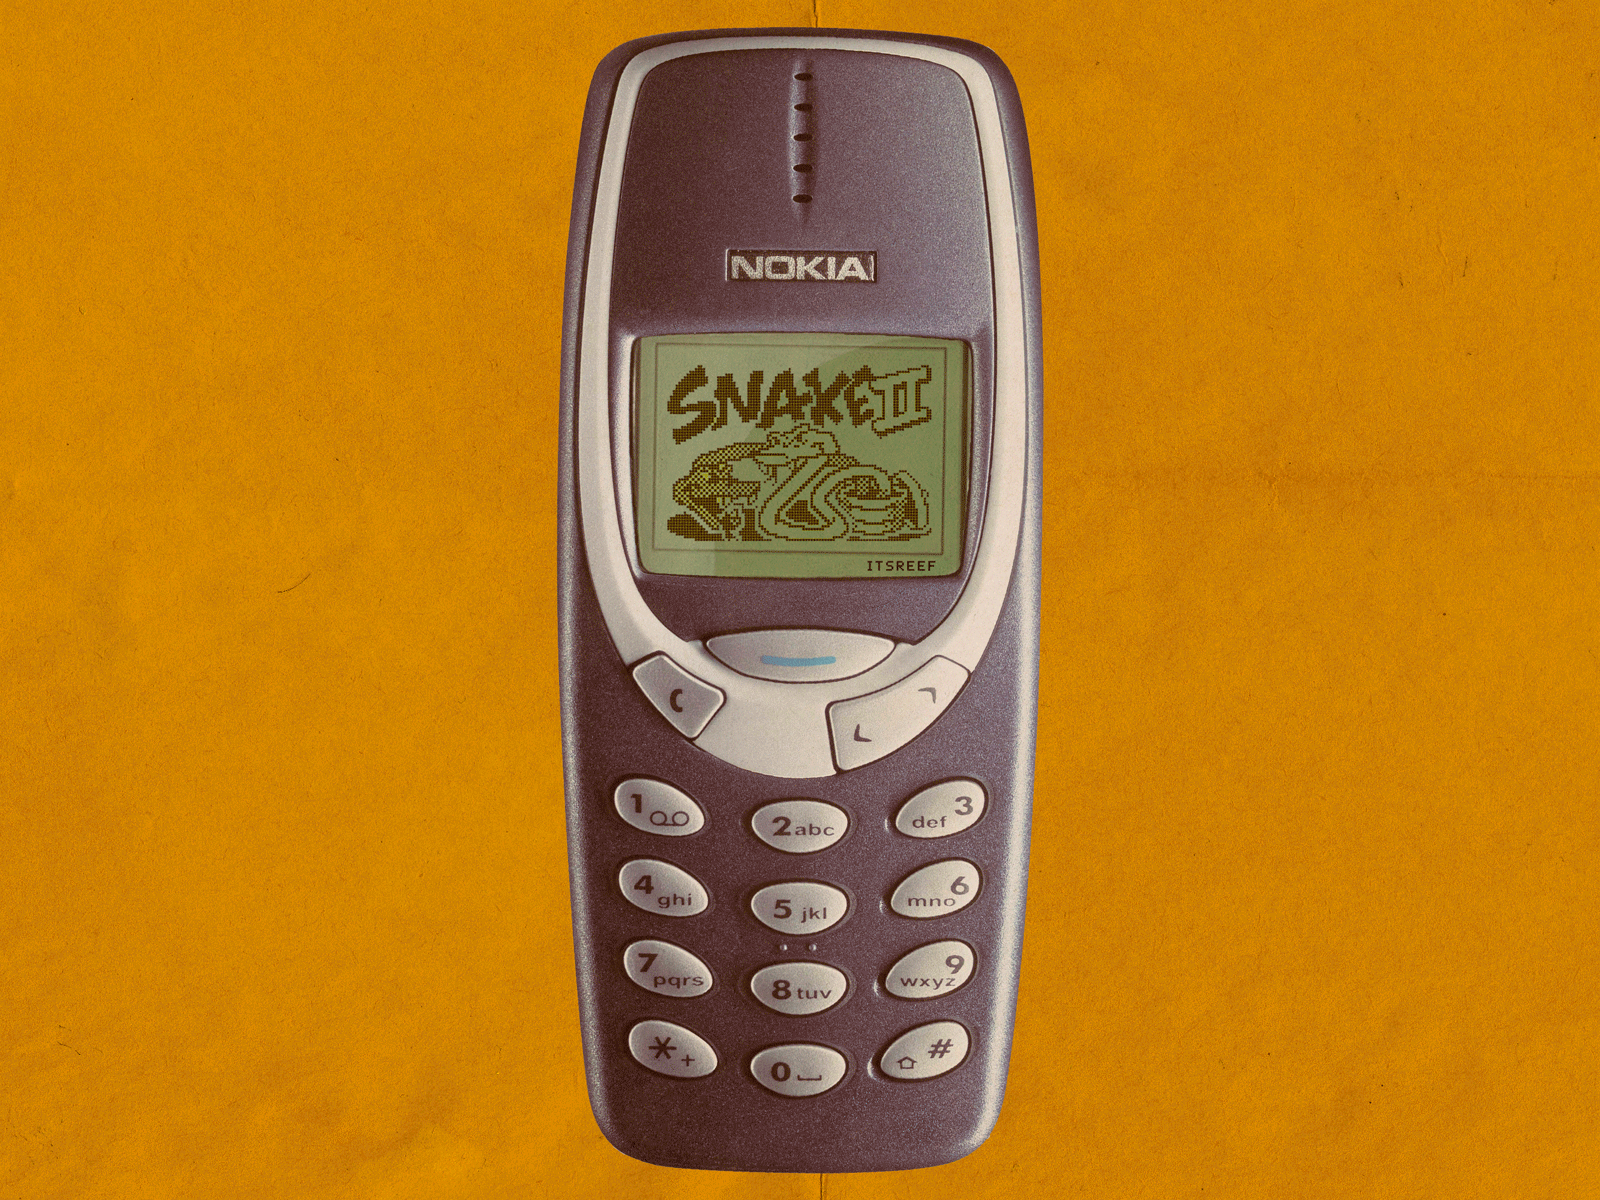 Nokia's Snake design old phone snake vintage